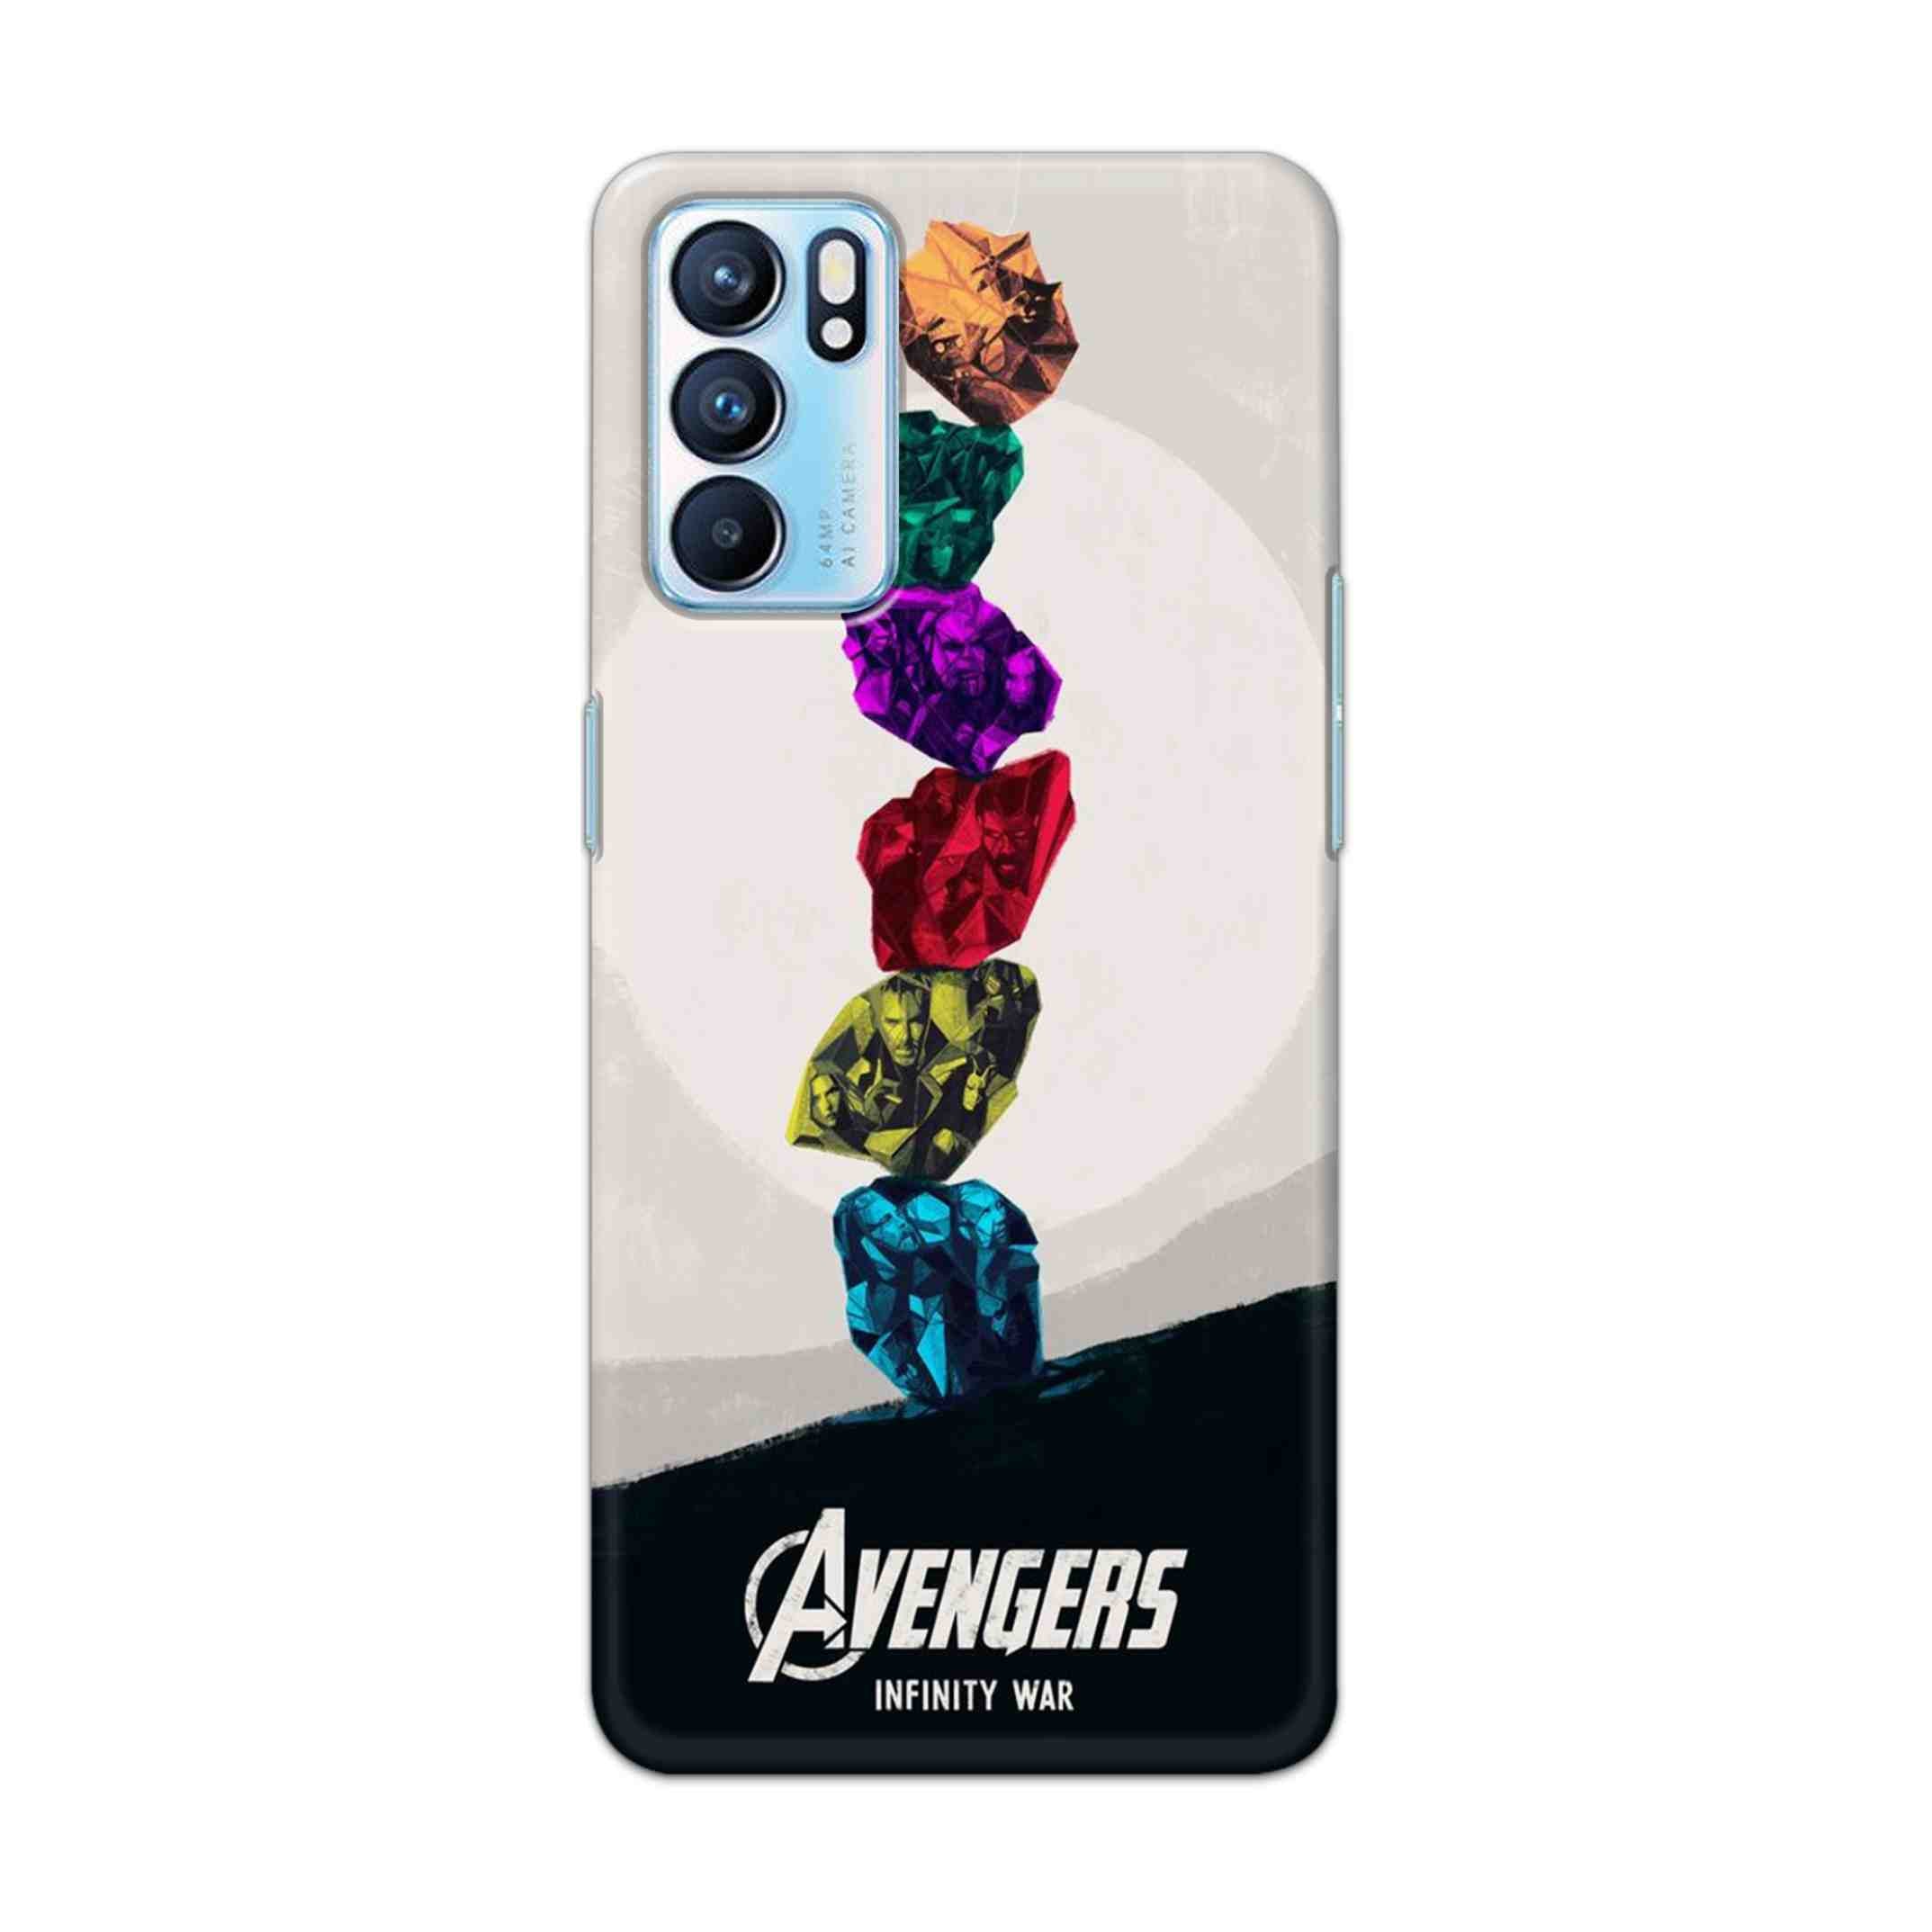 Buy Avengers Stone Hard Back Mobile Phone Case Cover For OPPO RENO 6 5G Online